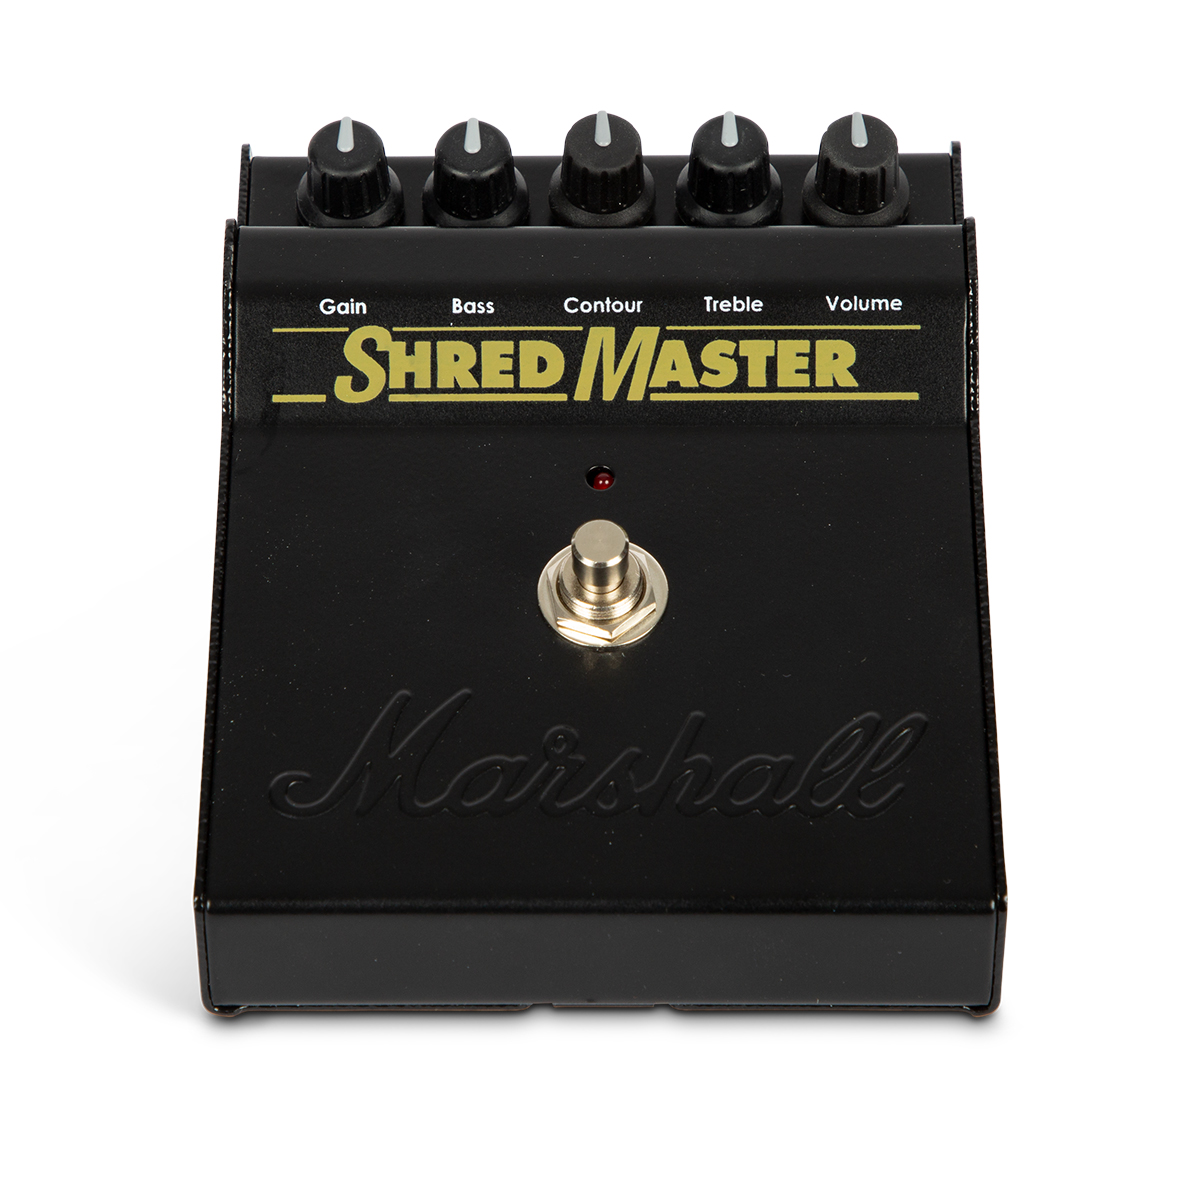 Marshall shred master